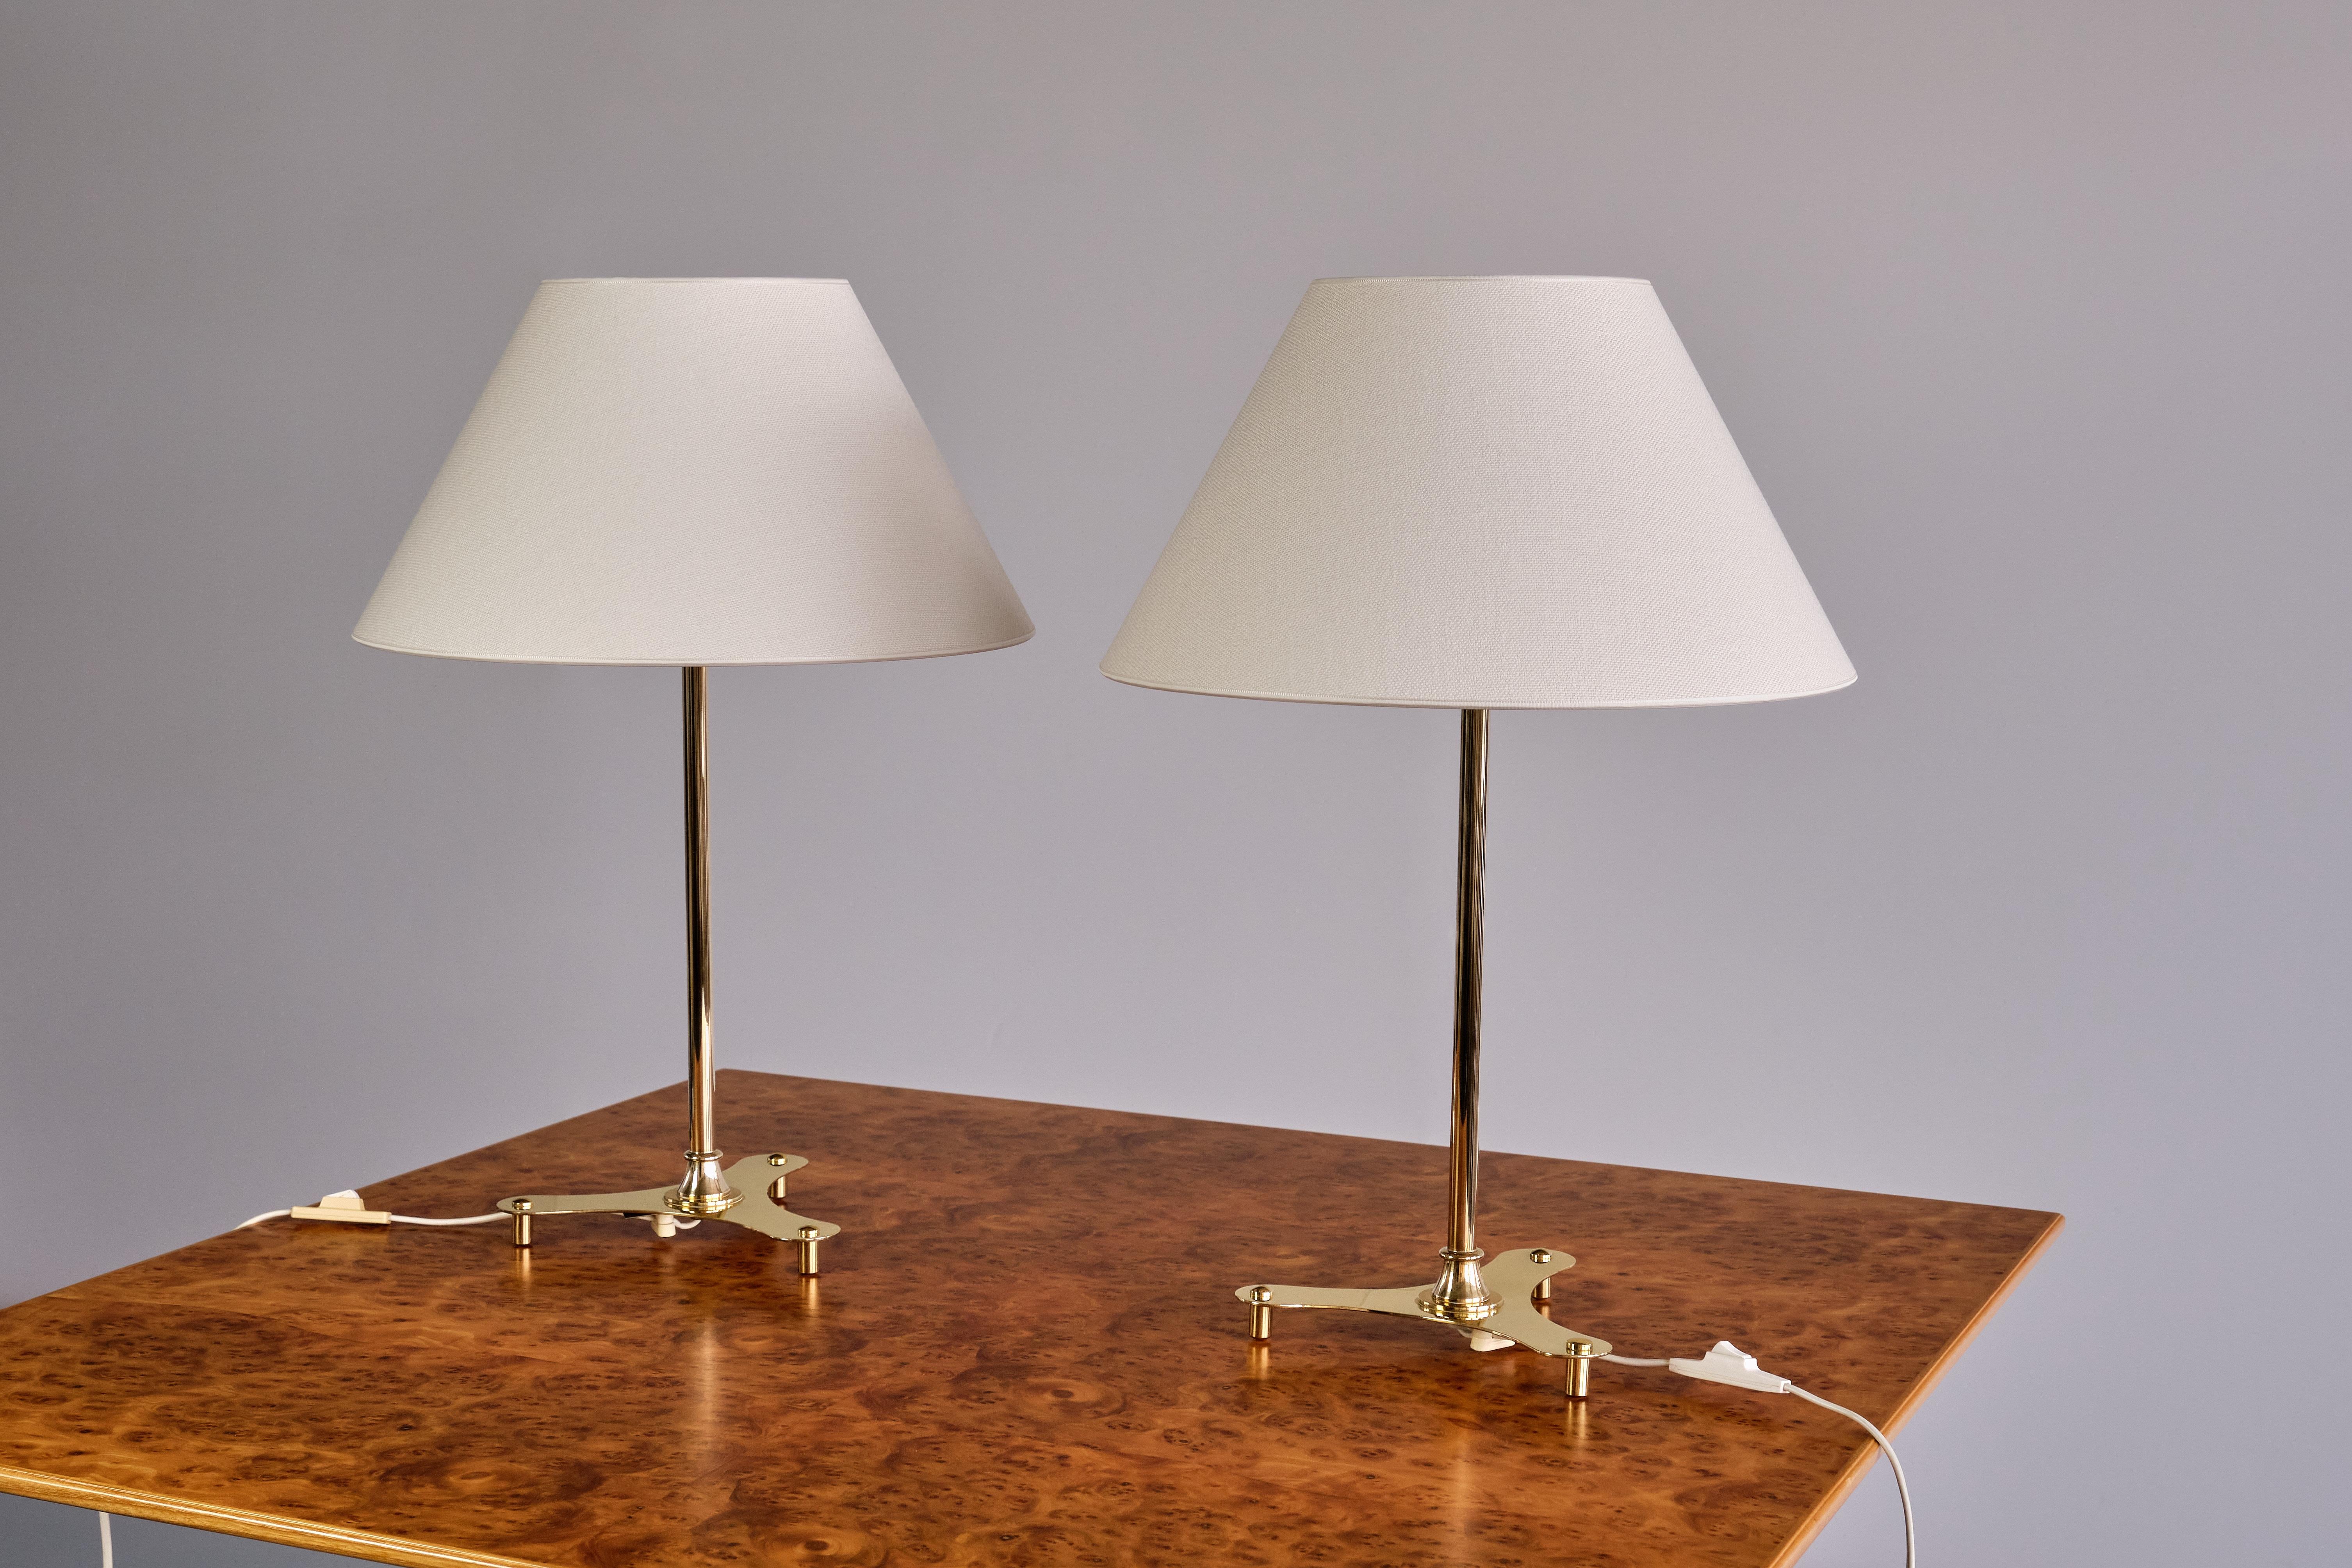 Cette rare paire de lampes de table a été conçue par Josef Frank et produite par Svenskt Tenn en Suède dans les années 1950. Les lampes portent le numéro de modèle 2467/2 sur la base du culot. Ce modèle, qui n'est plus produit, figurait également